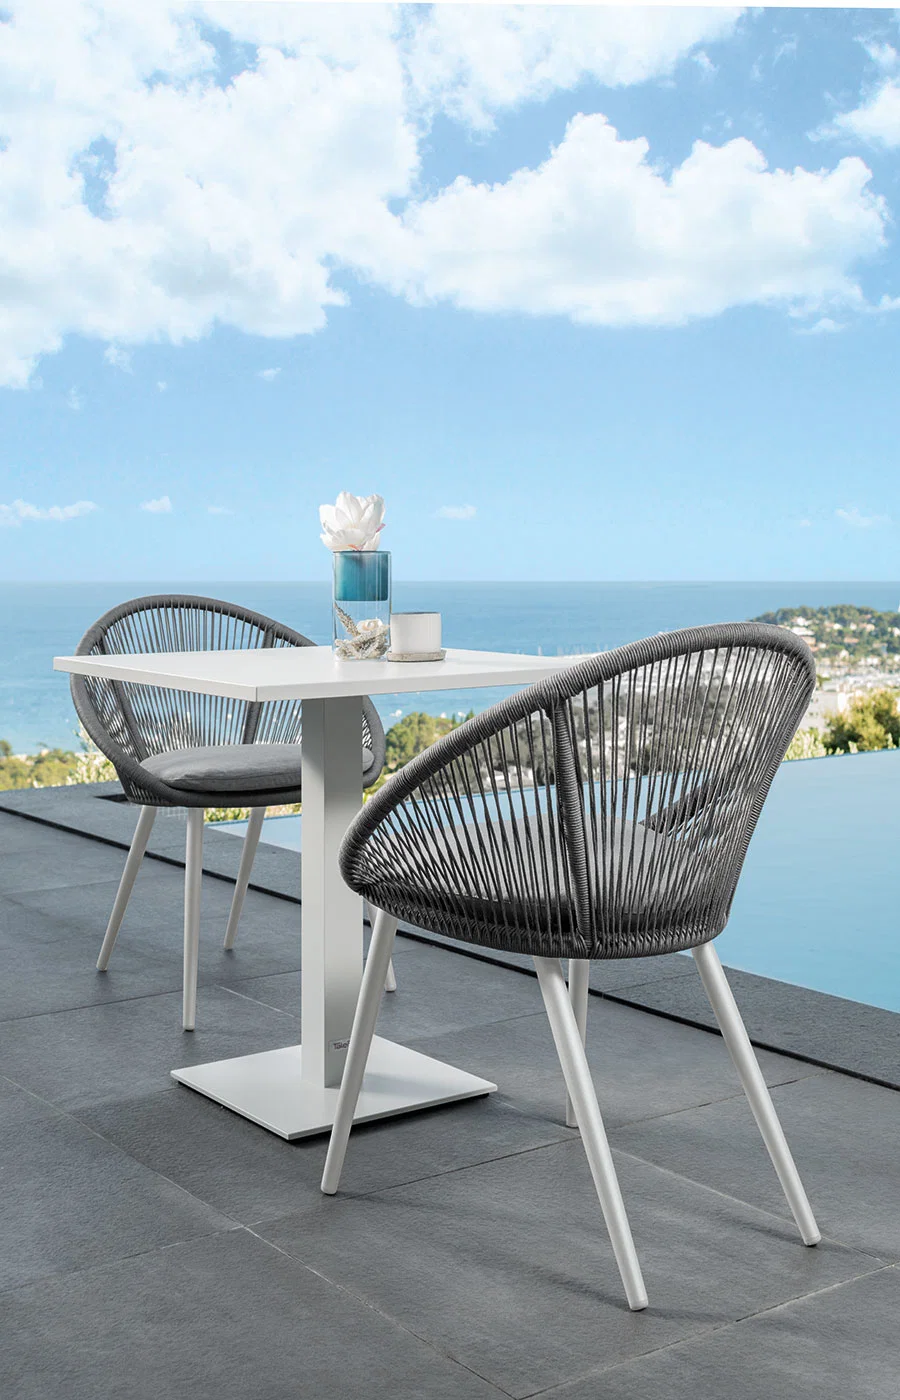 Table de salle à manger extérieure en bois pour yacht familial de l'hôtel. Les chaises peuvent être personnalisées. Ensemble de meubles.